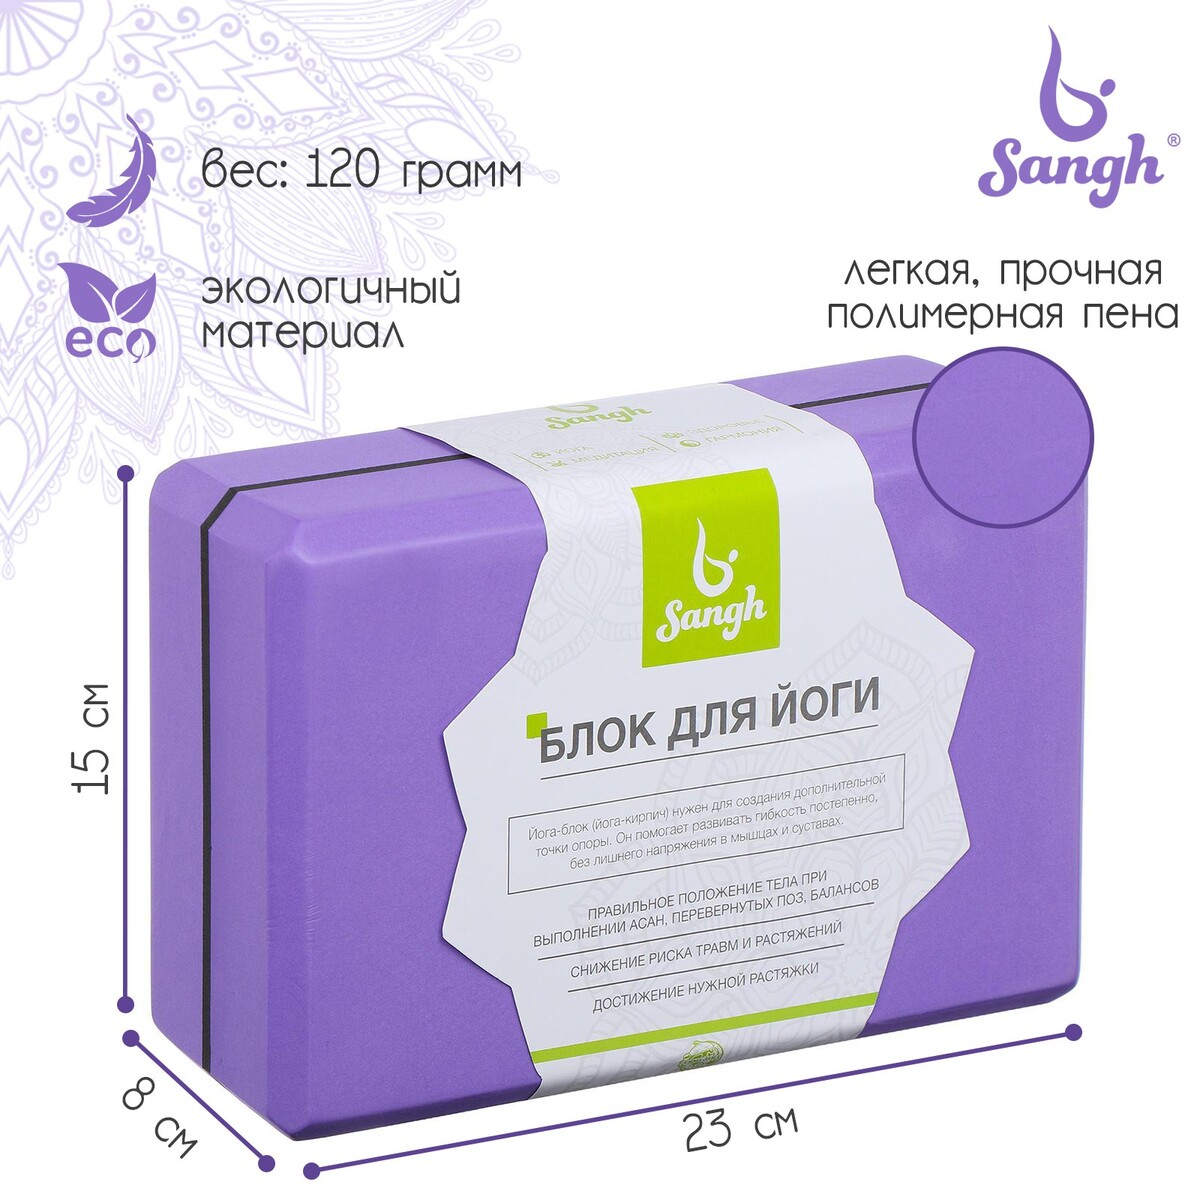 Блок для йоги sangh, 23х15х8, цвет фиолетовый ролик для йоги sportex 45х11см эва абс e40750 фиолетовый